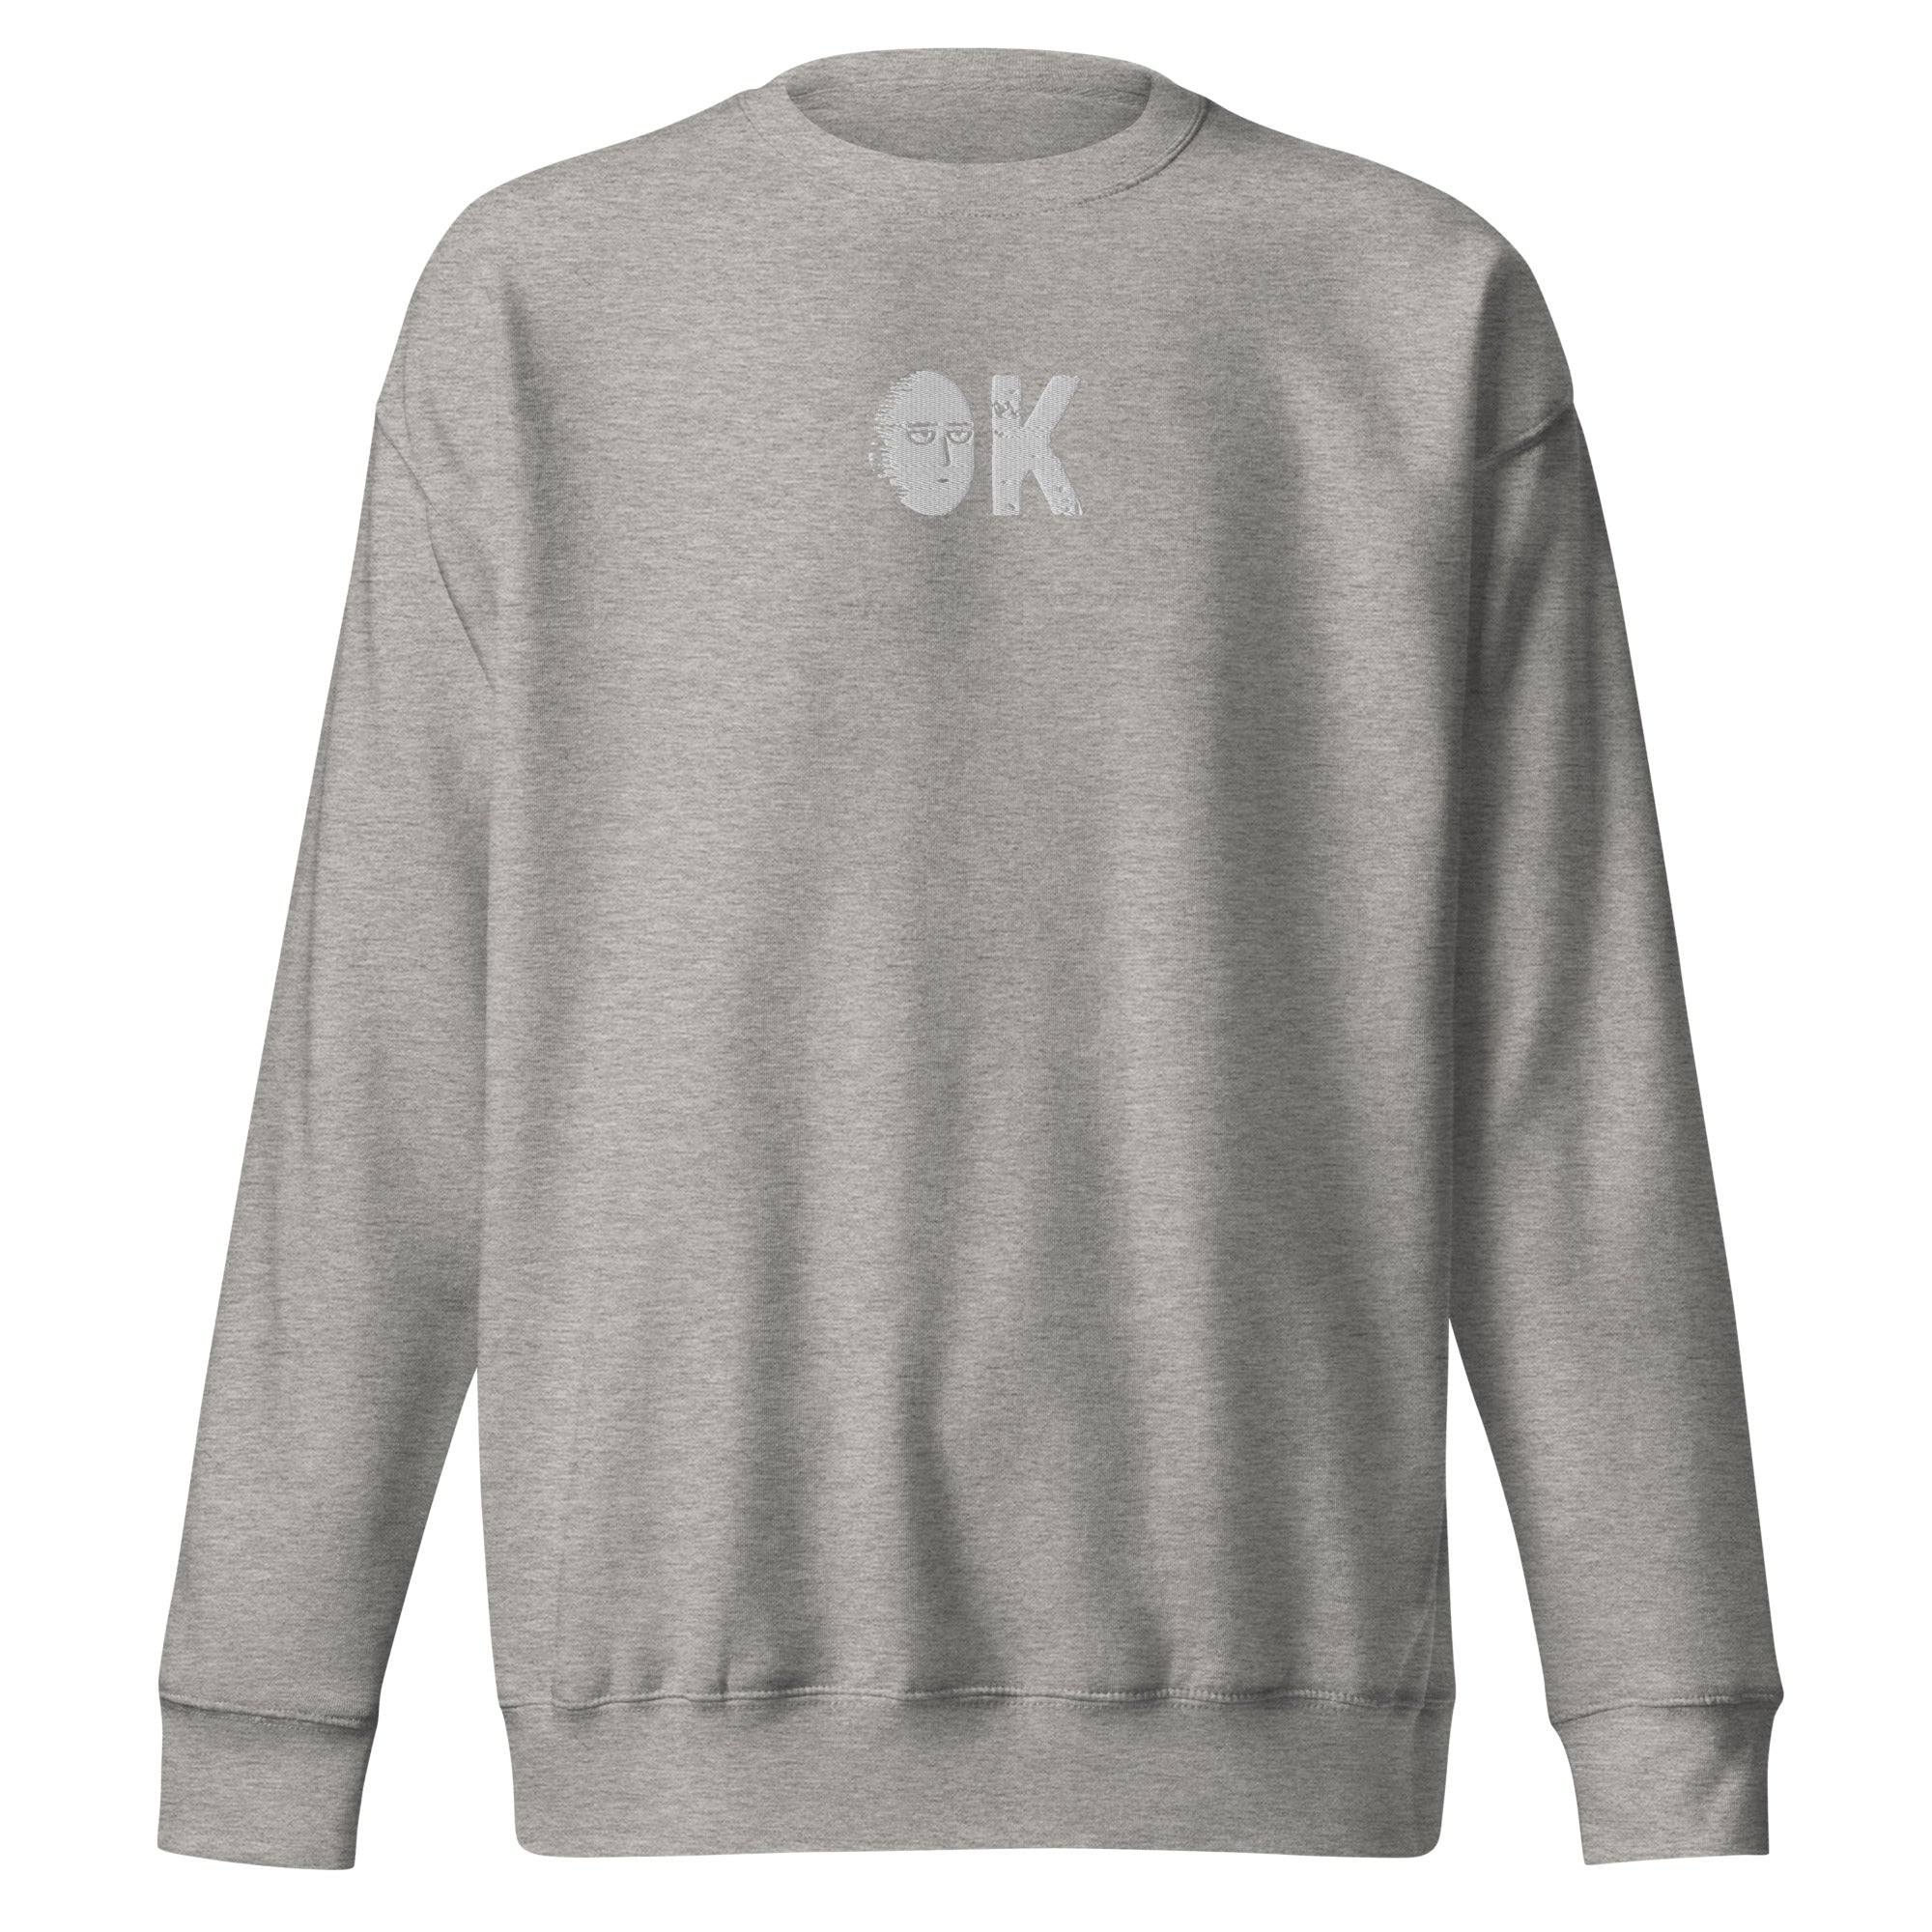 Saitama OK Embroidered Unisex Premium Anime Crewneck Sweatshirt